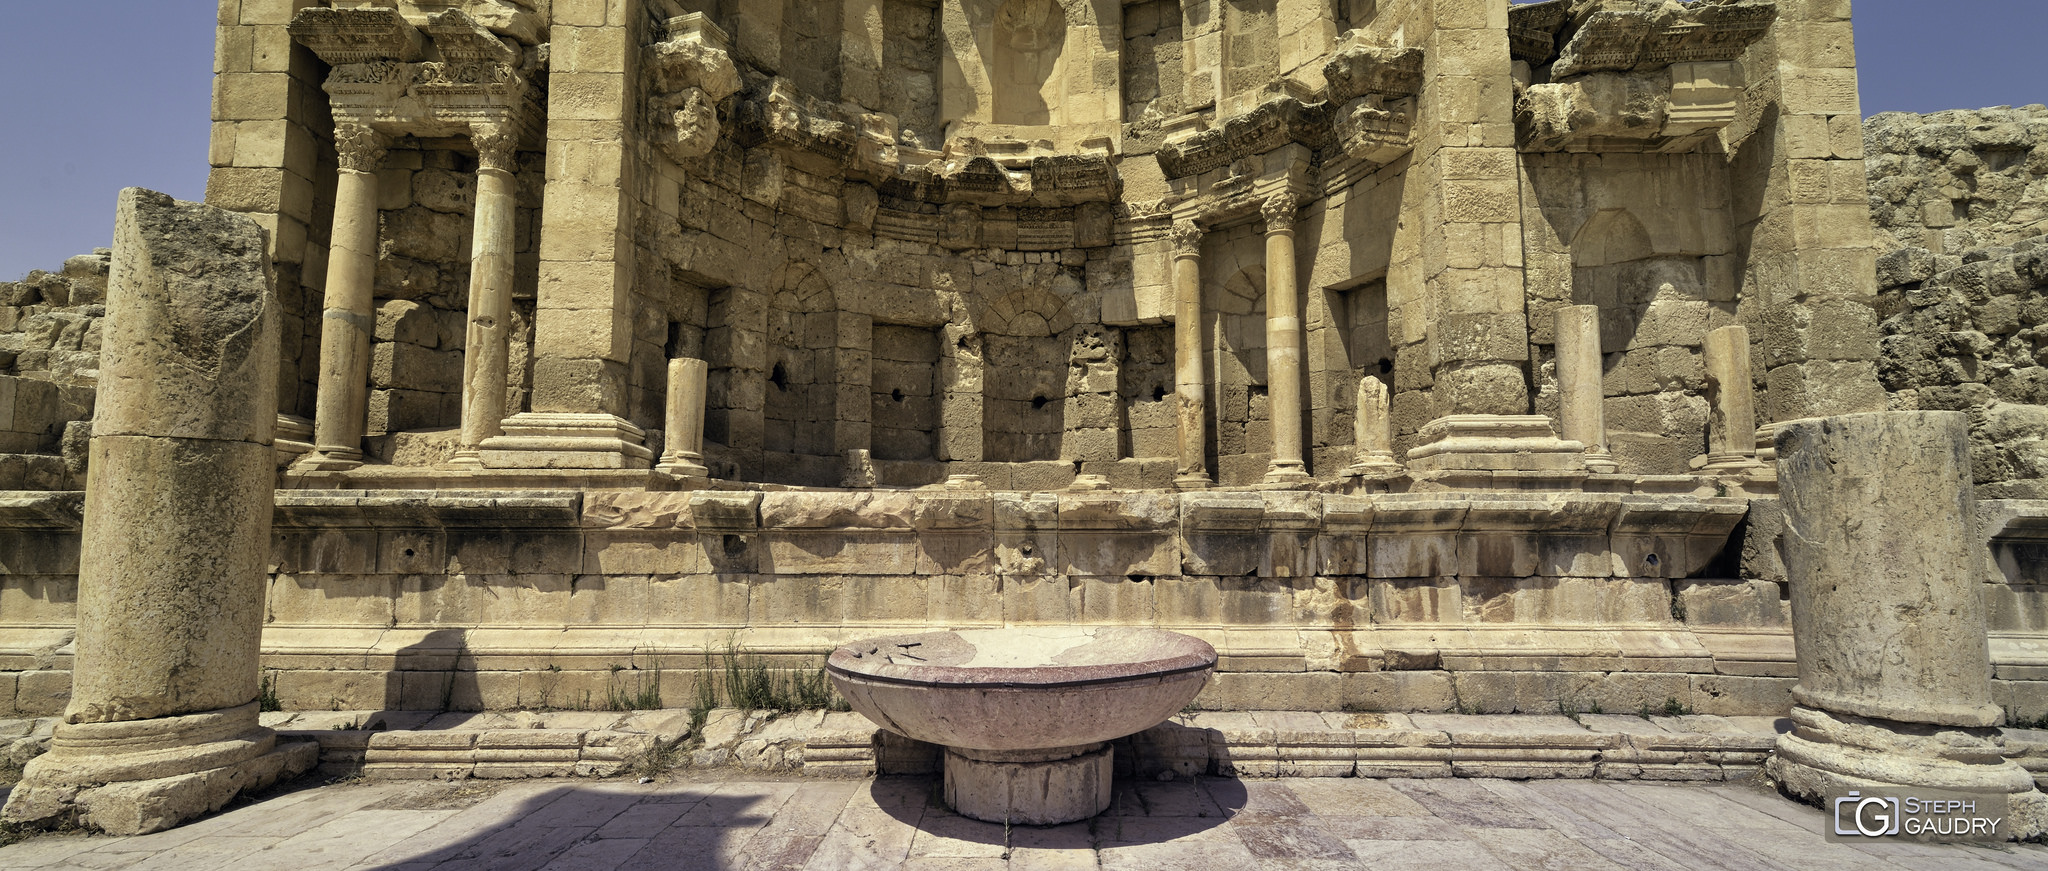 Le nympheum de Jerash [Click to start slideshow]